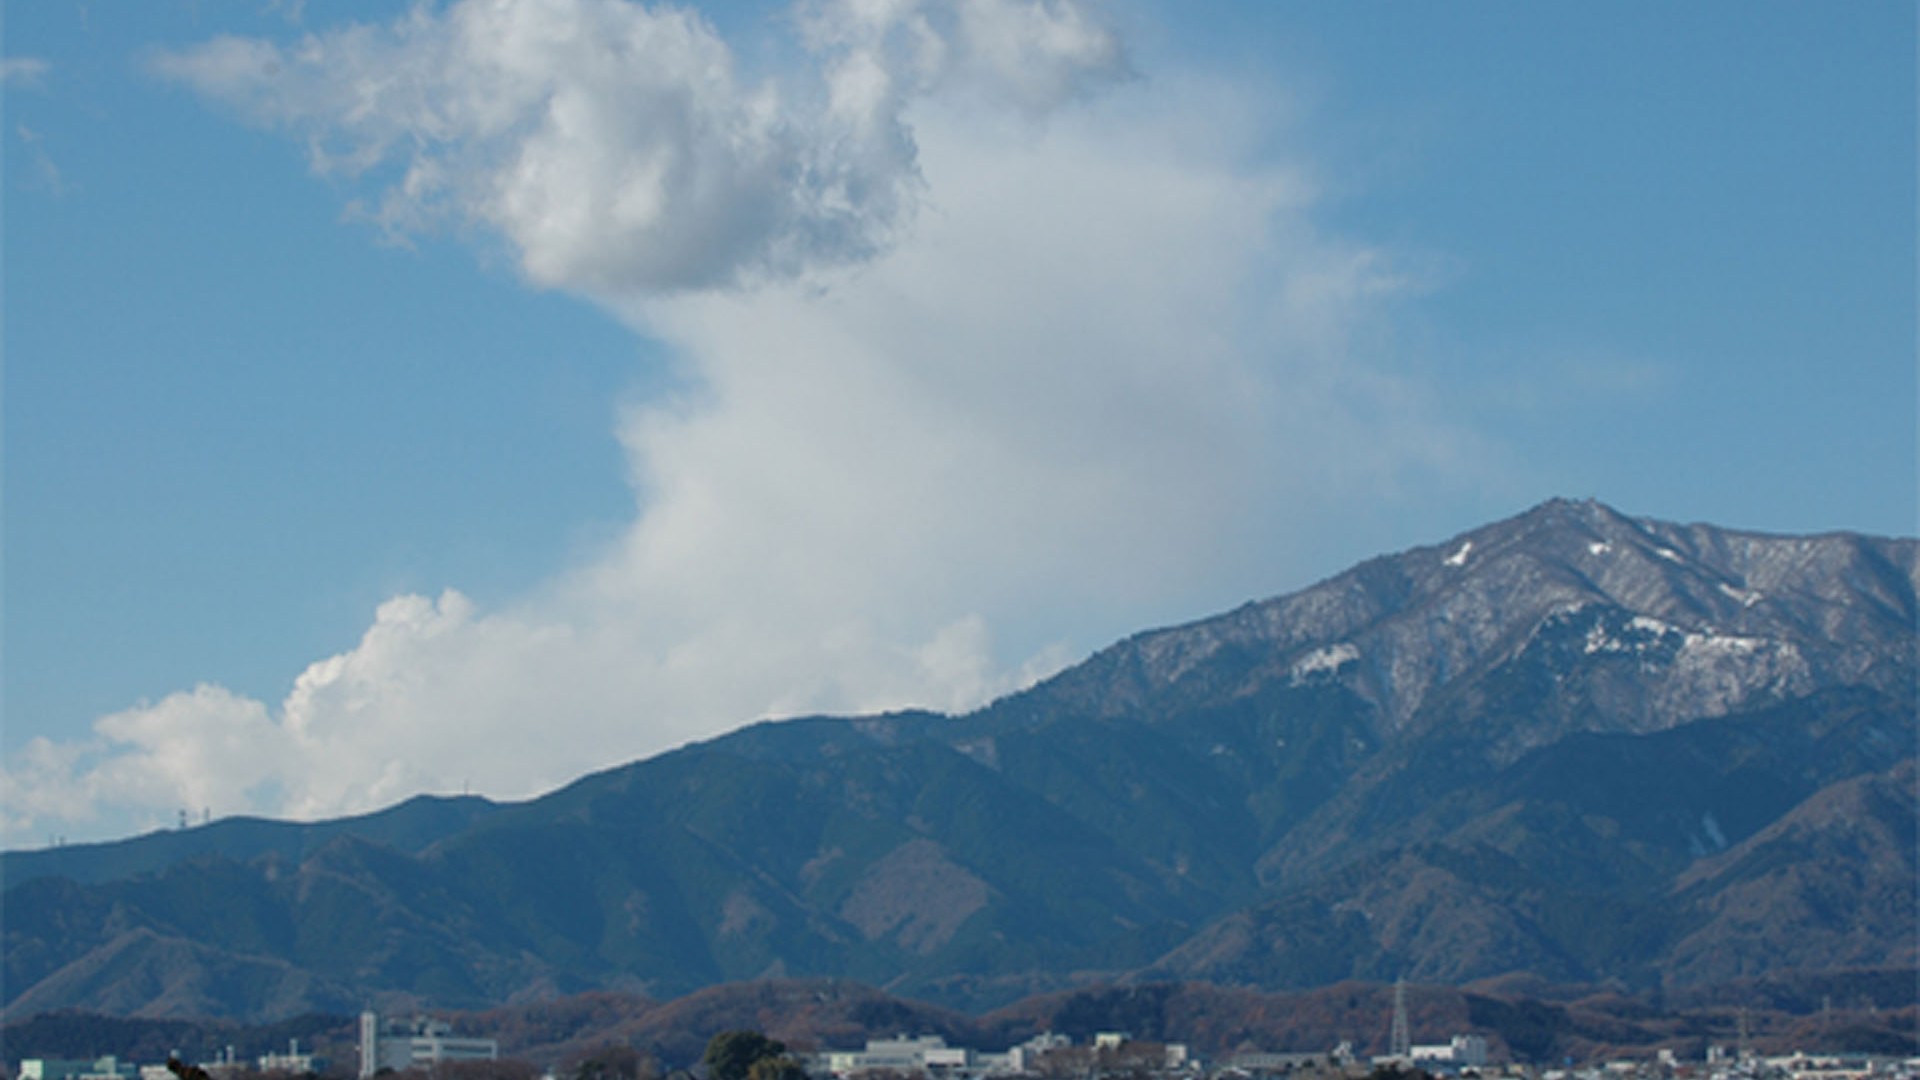 Mt. Fuji and Mt. Oyama